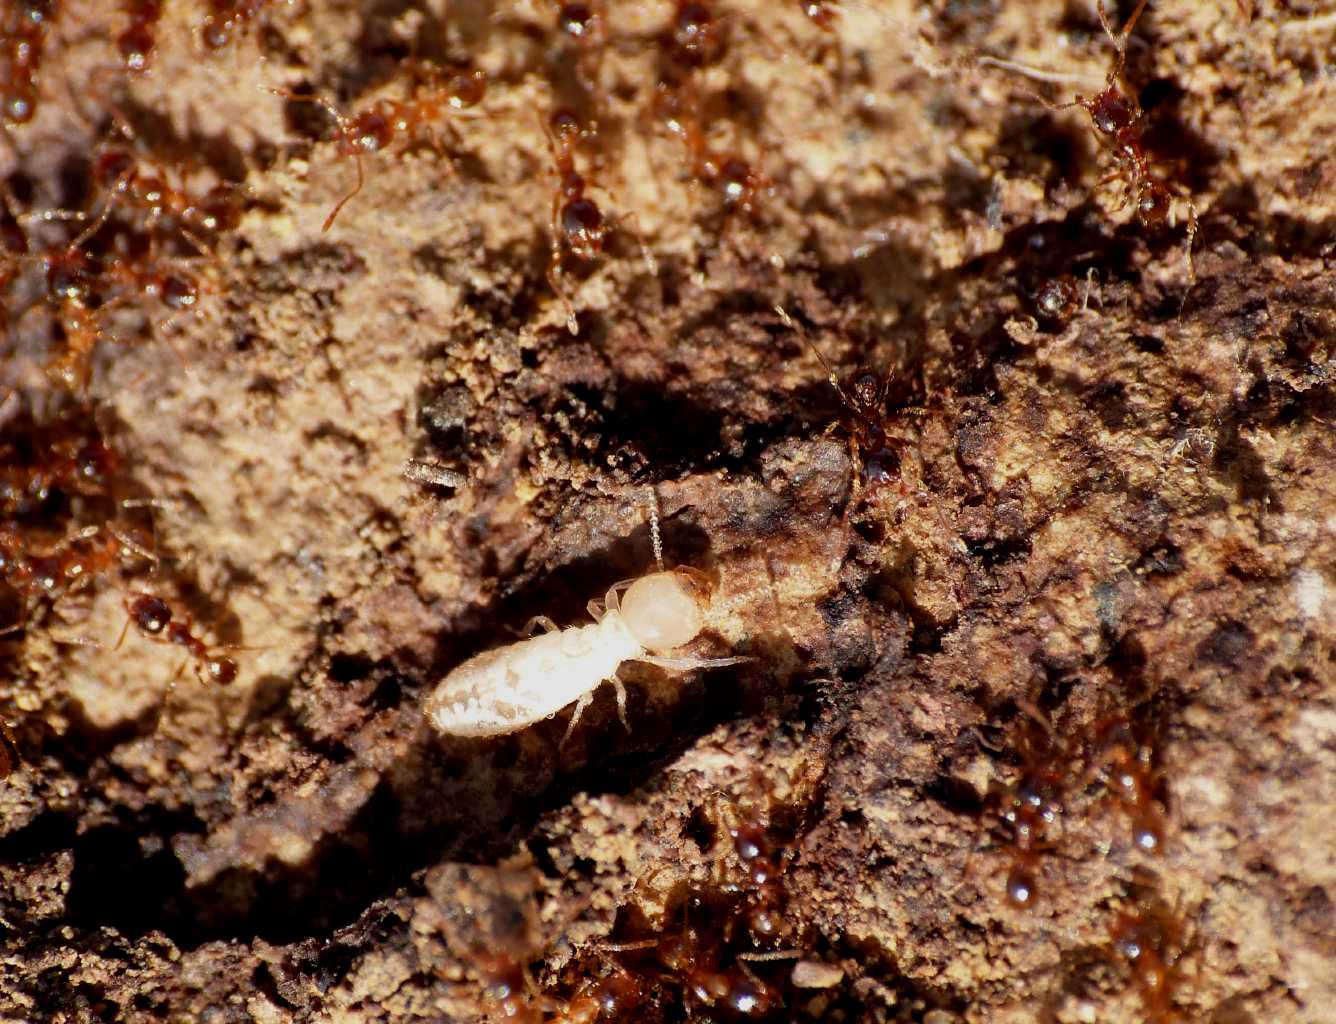 Formiche e termiti - S. Severa (RM)